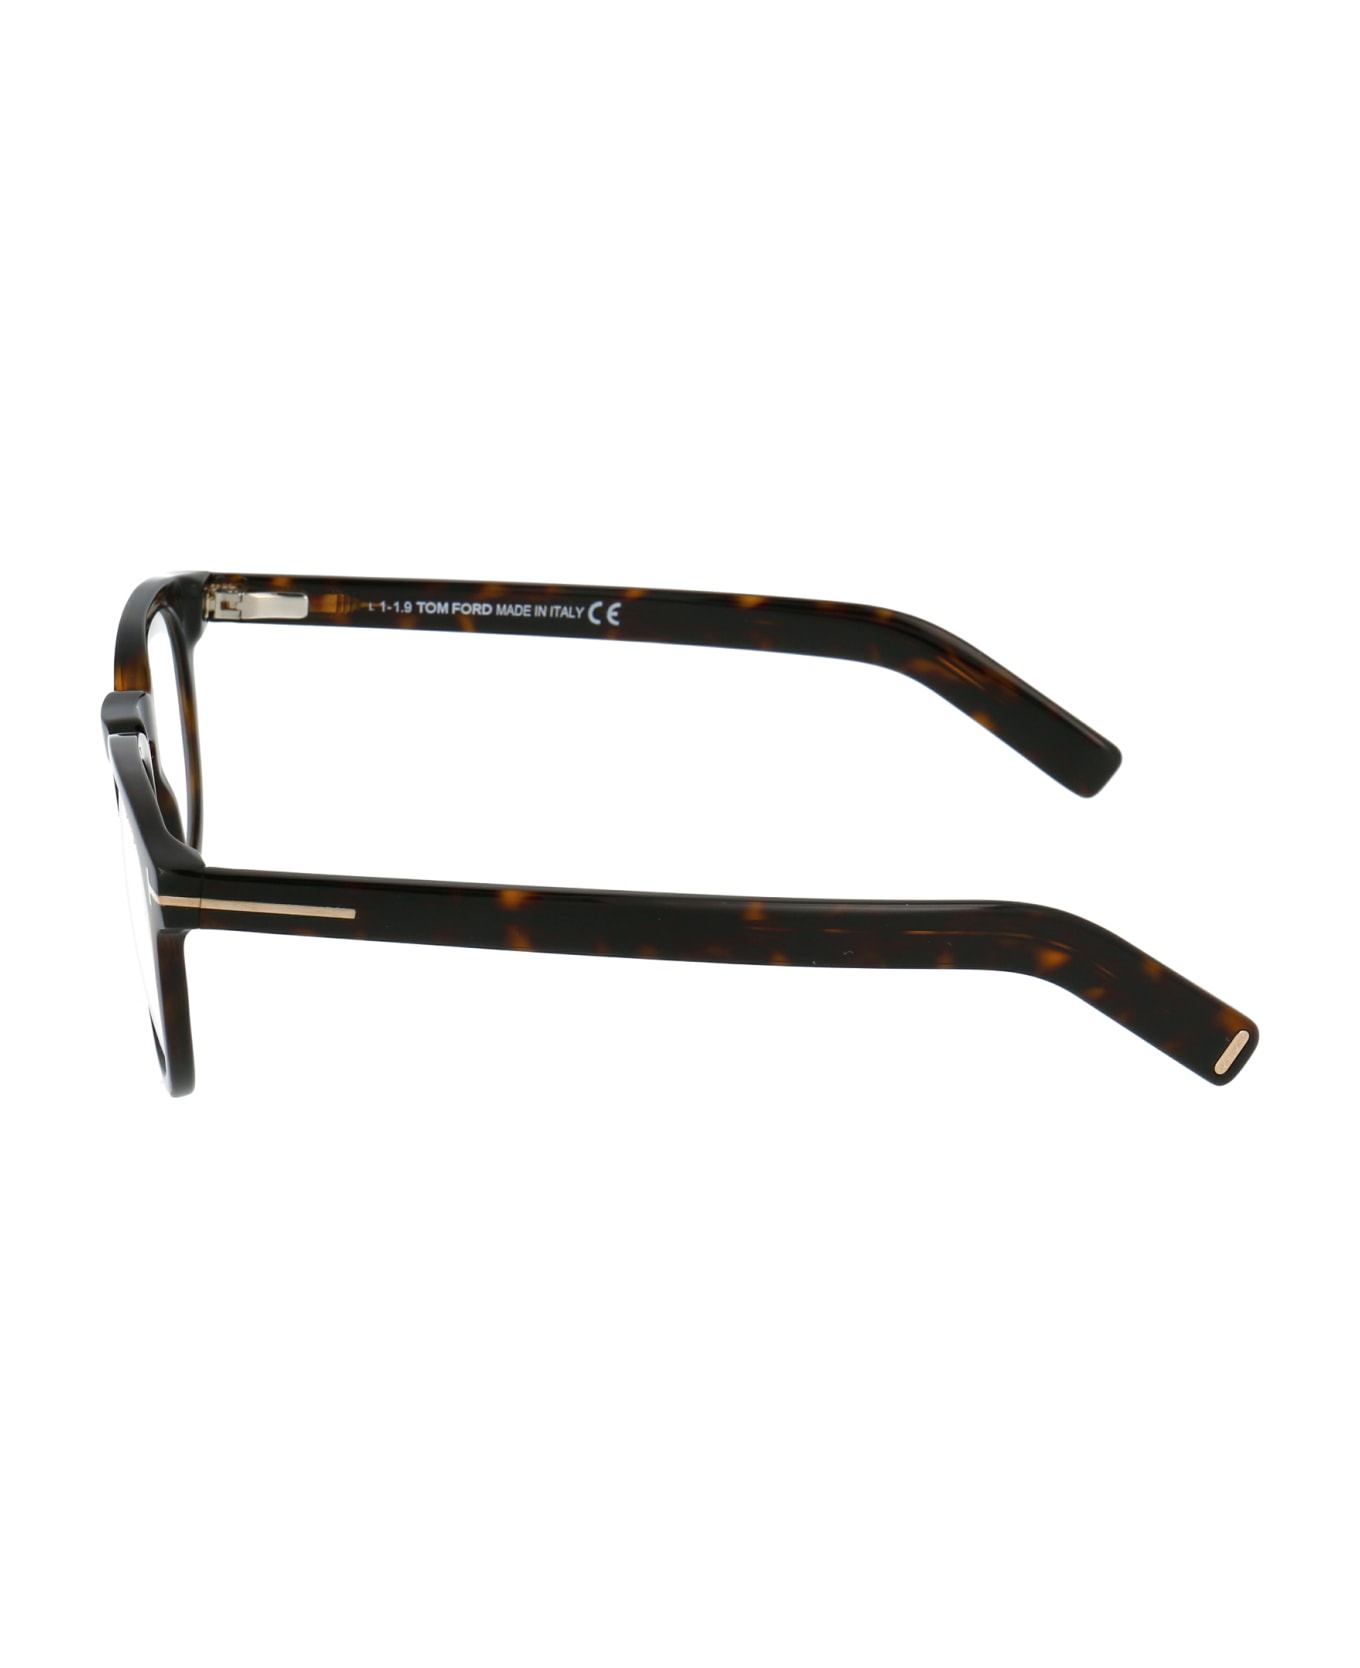 Tom Ford Eyewear Ft5629-b Glasses - 052 Avana Scura アイウェア